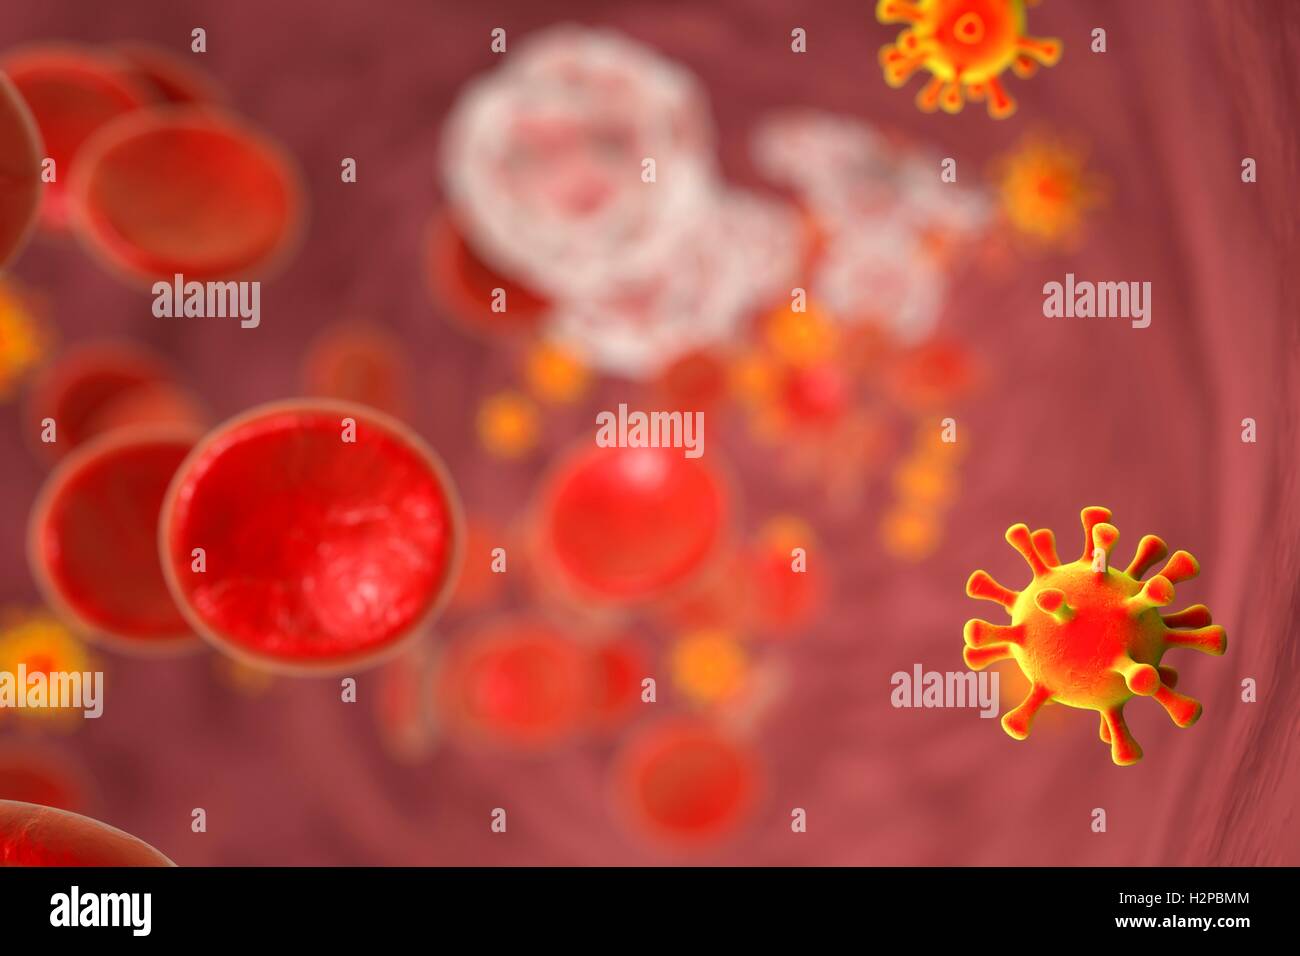 Illustrazione di Virus di Immunodeficienza Umana (HIV) nel sangue. L' HIV è un RNA (acido ribonucleico) virus dalla famiglia Retroviridae che causa la sindrome da immunodeficienza acquisita (AIDS). Foto Stock